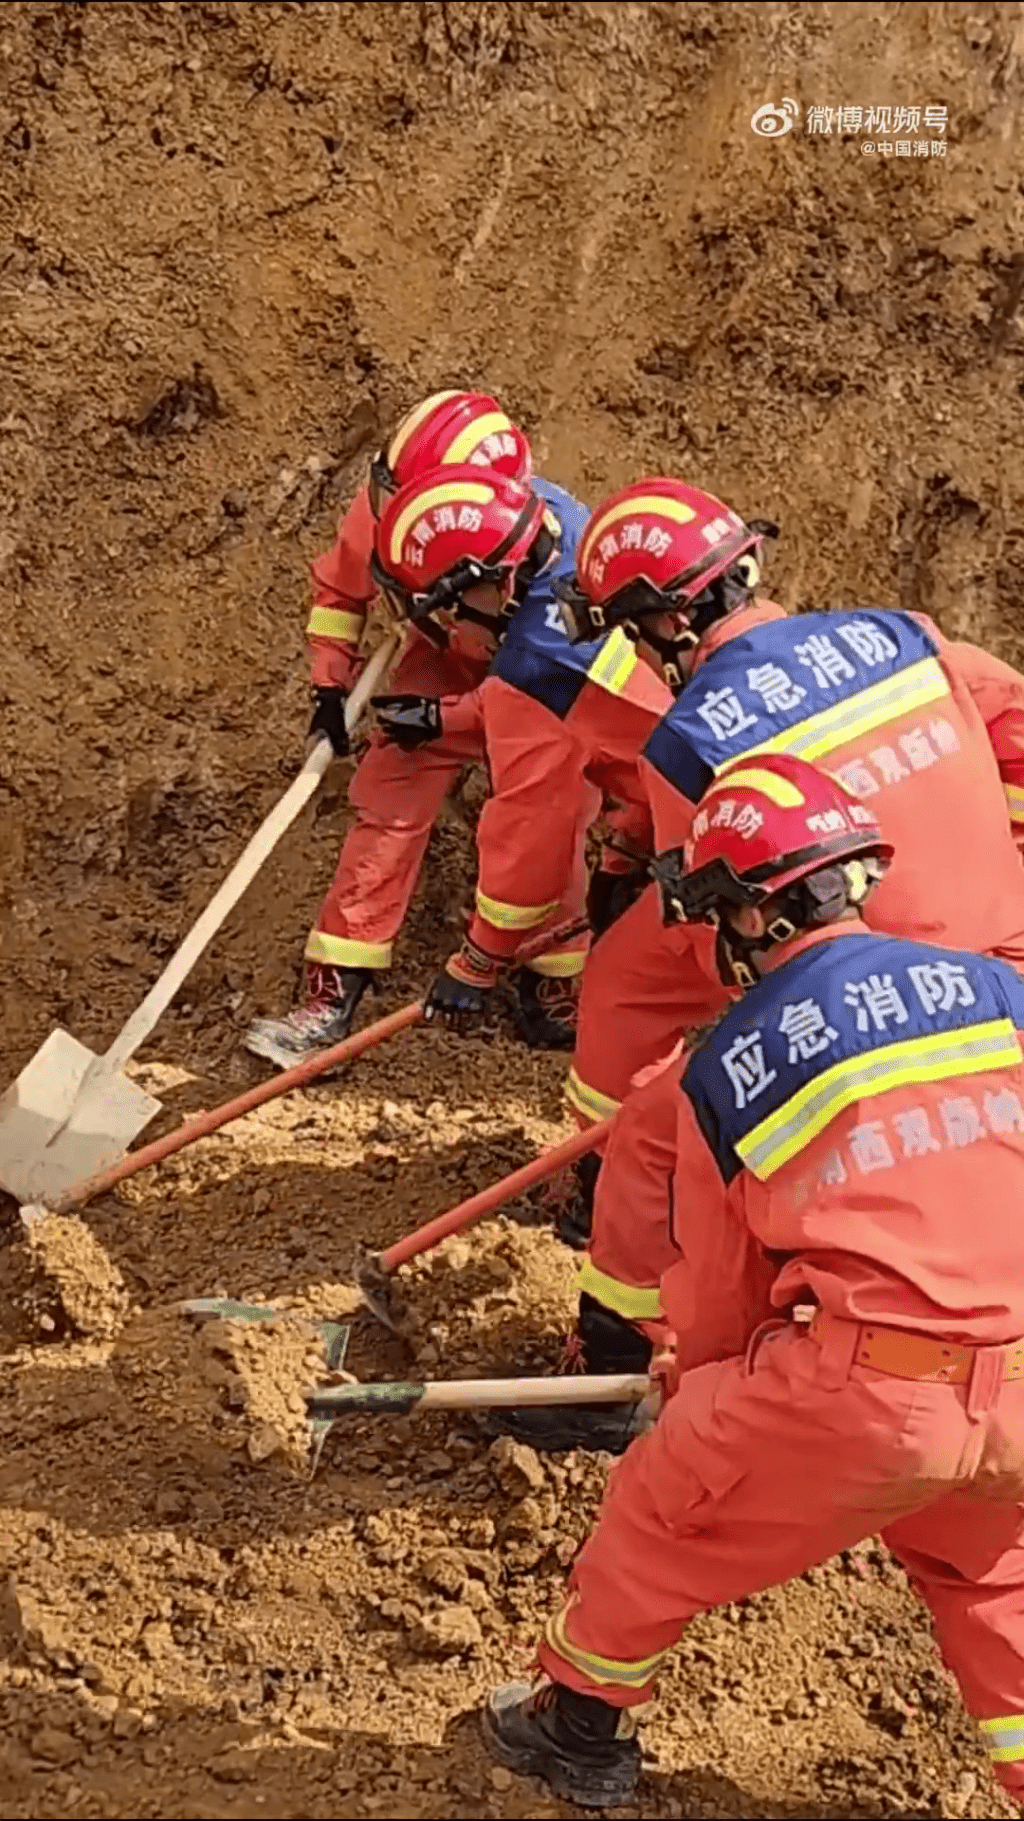 消防員搶救被困人士。 中國消防